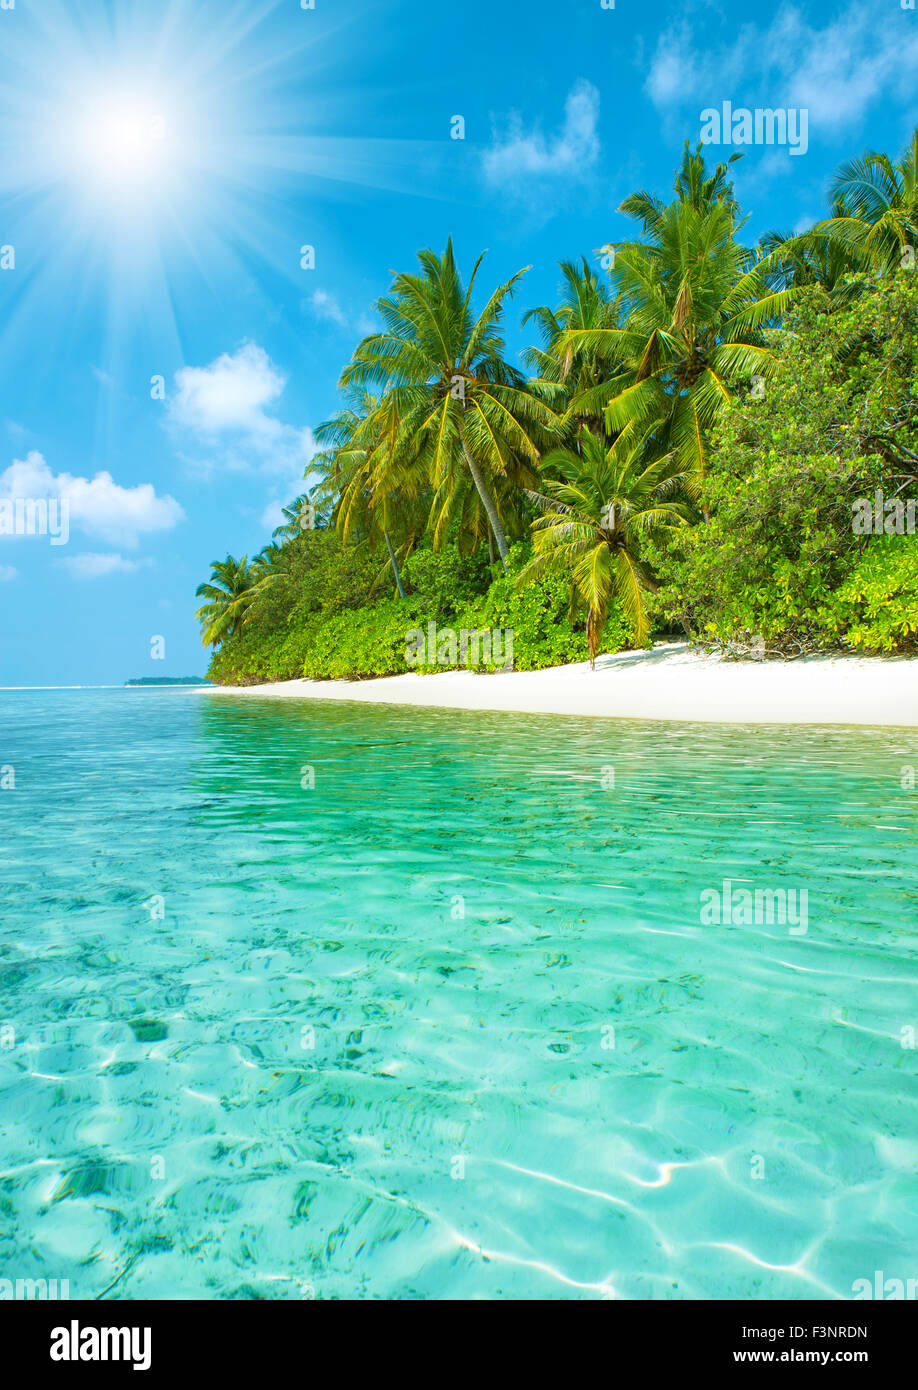 La plage de sable tropicale avec palmiers et ciel bleu parfait. Paradise Island landscape Banque D'Images